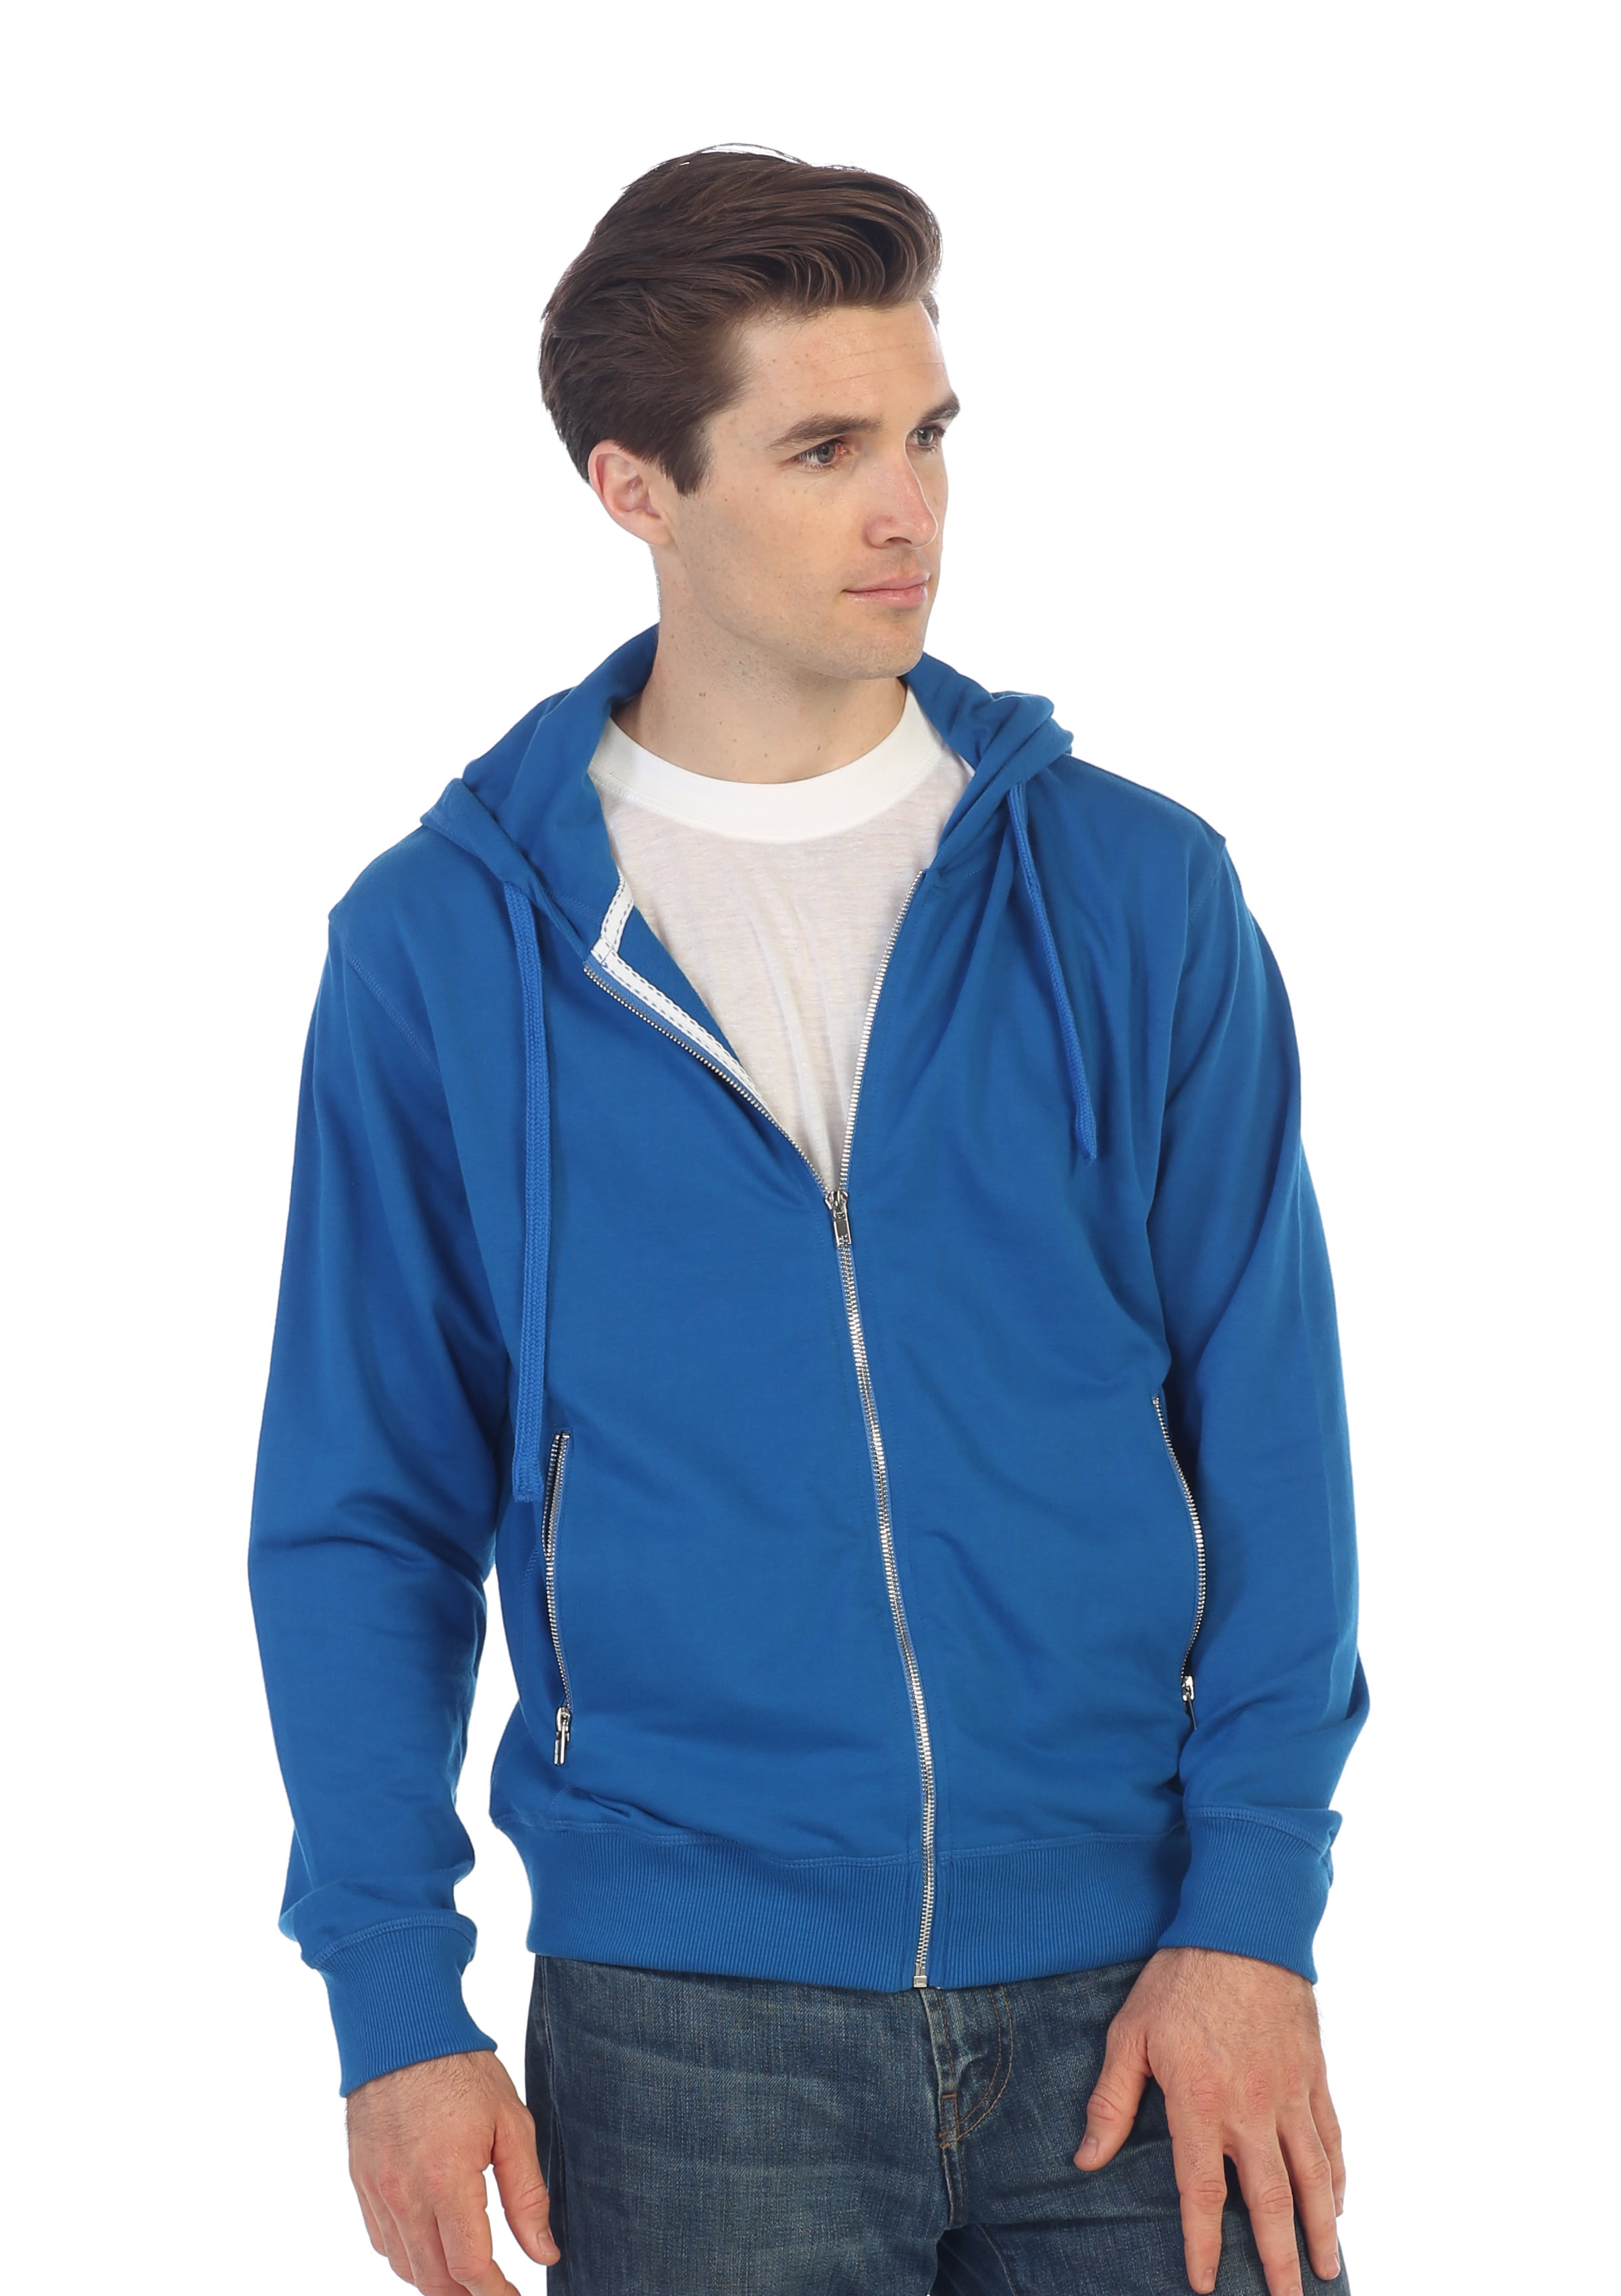 blue zip up hoodie womens